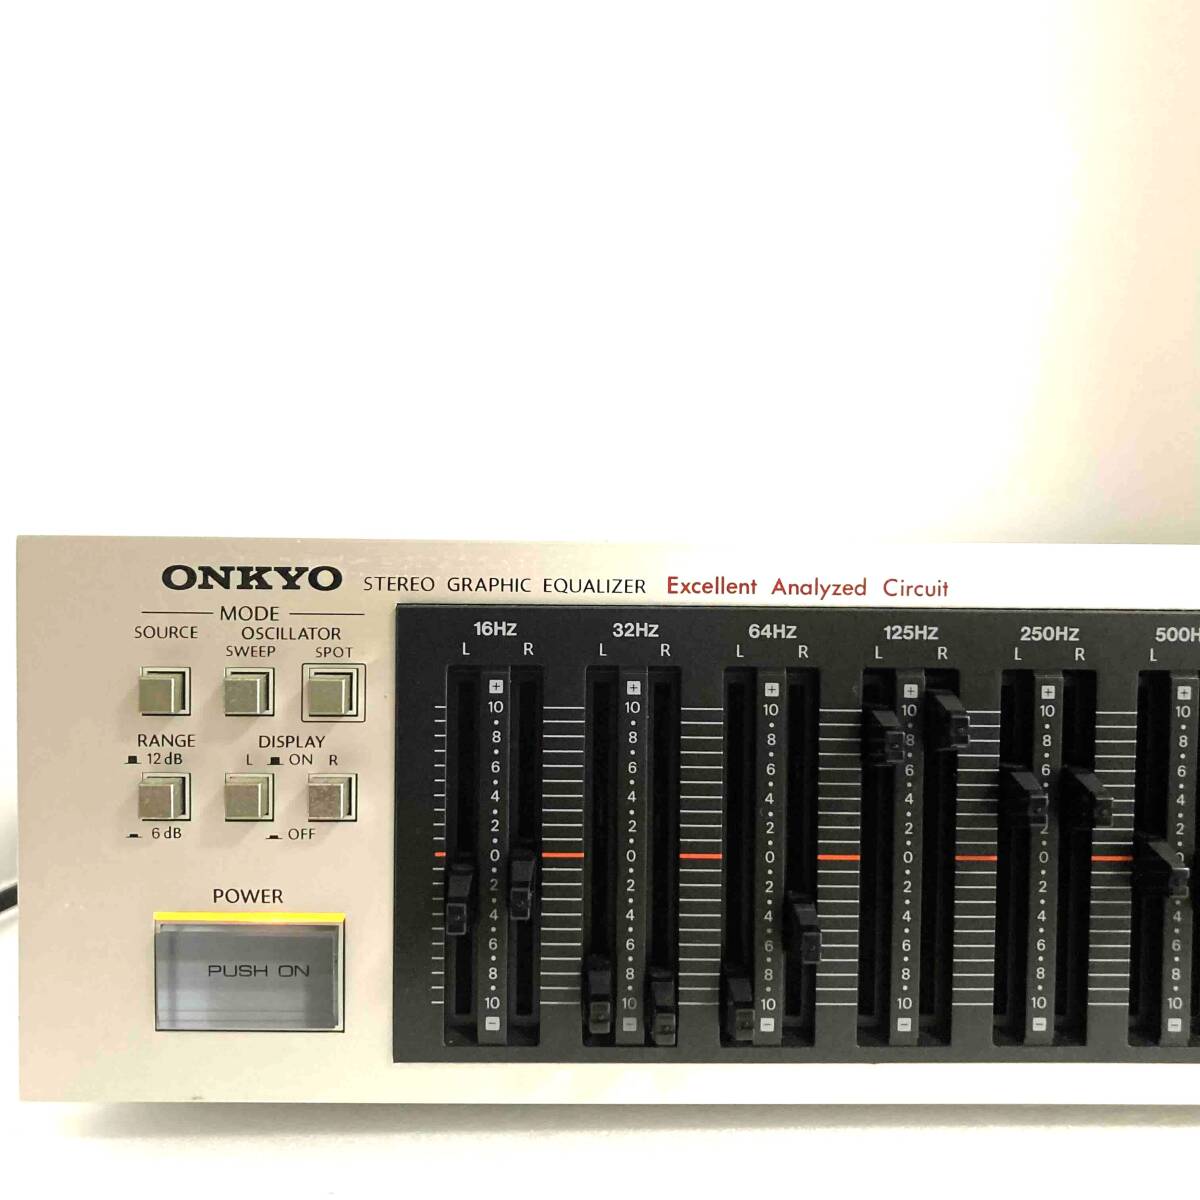 ONKYO Integra E-707 Onkyo stereo graphic equalizer equalizer sound equipment audio equipment 